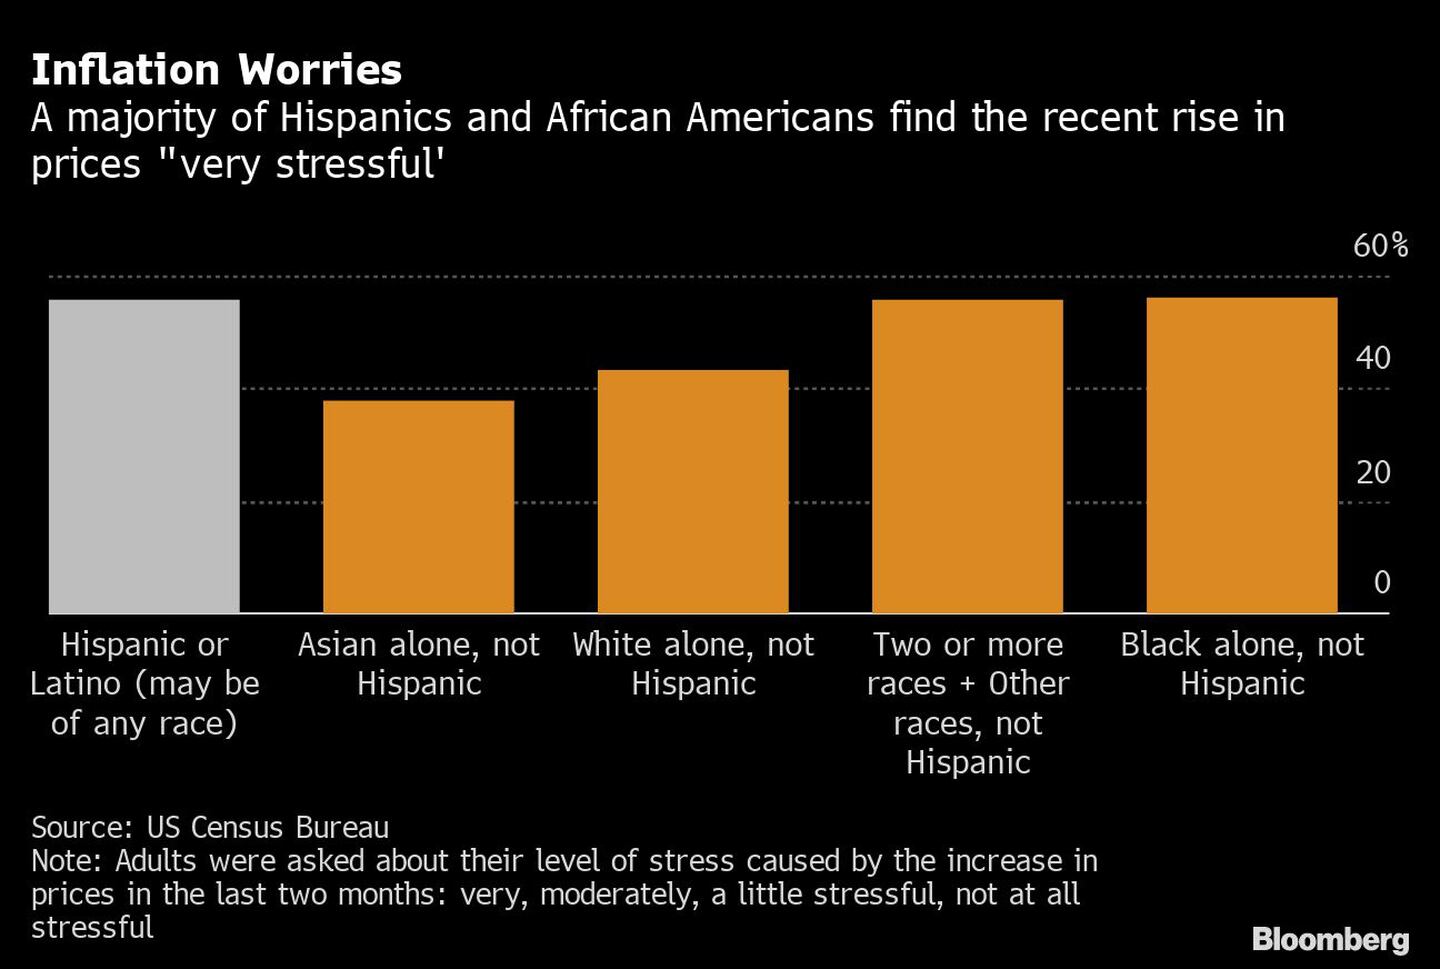 La mayoría de los hispanos y afroamericanos consideran los aumentos recientes como "muy estresantes".dfd